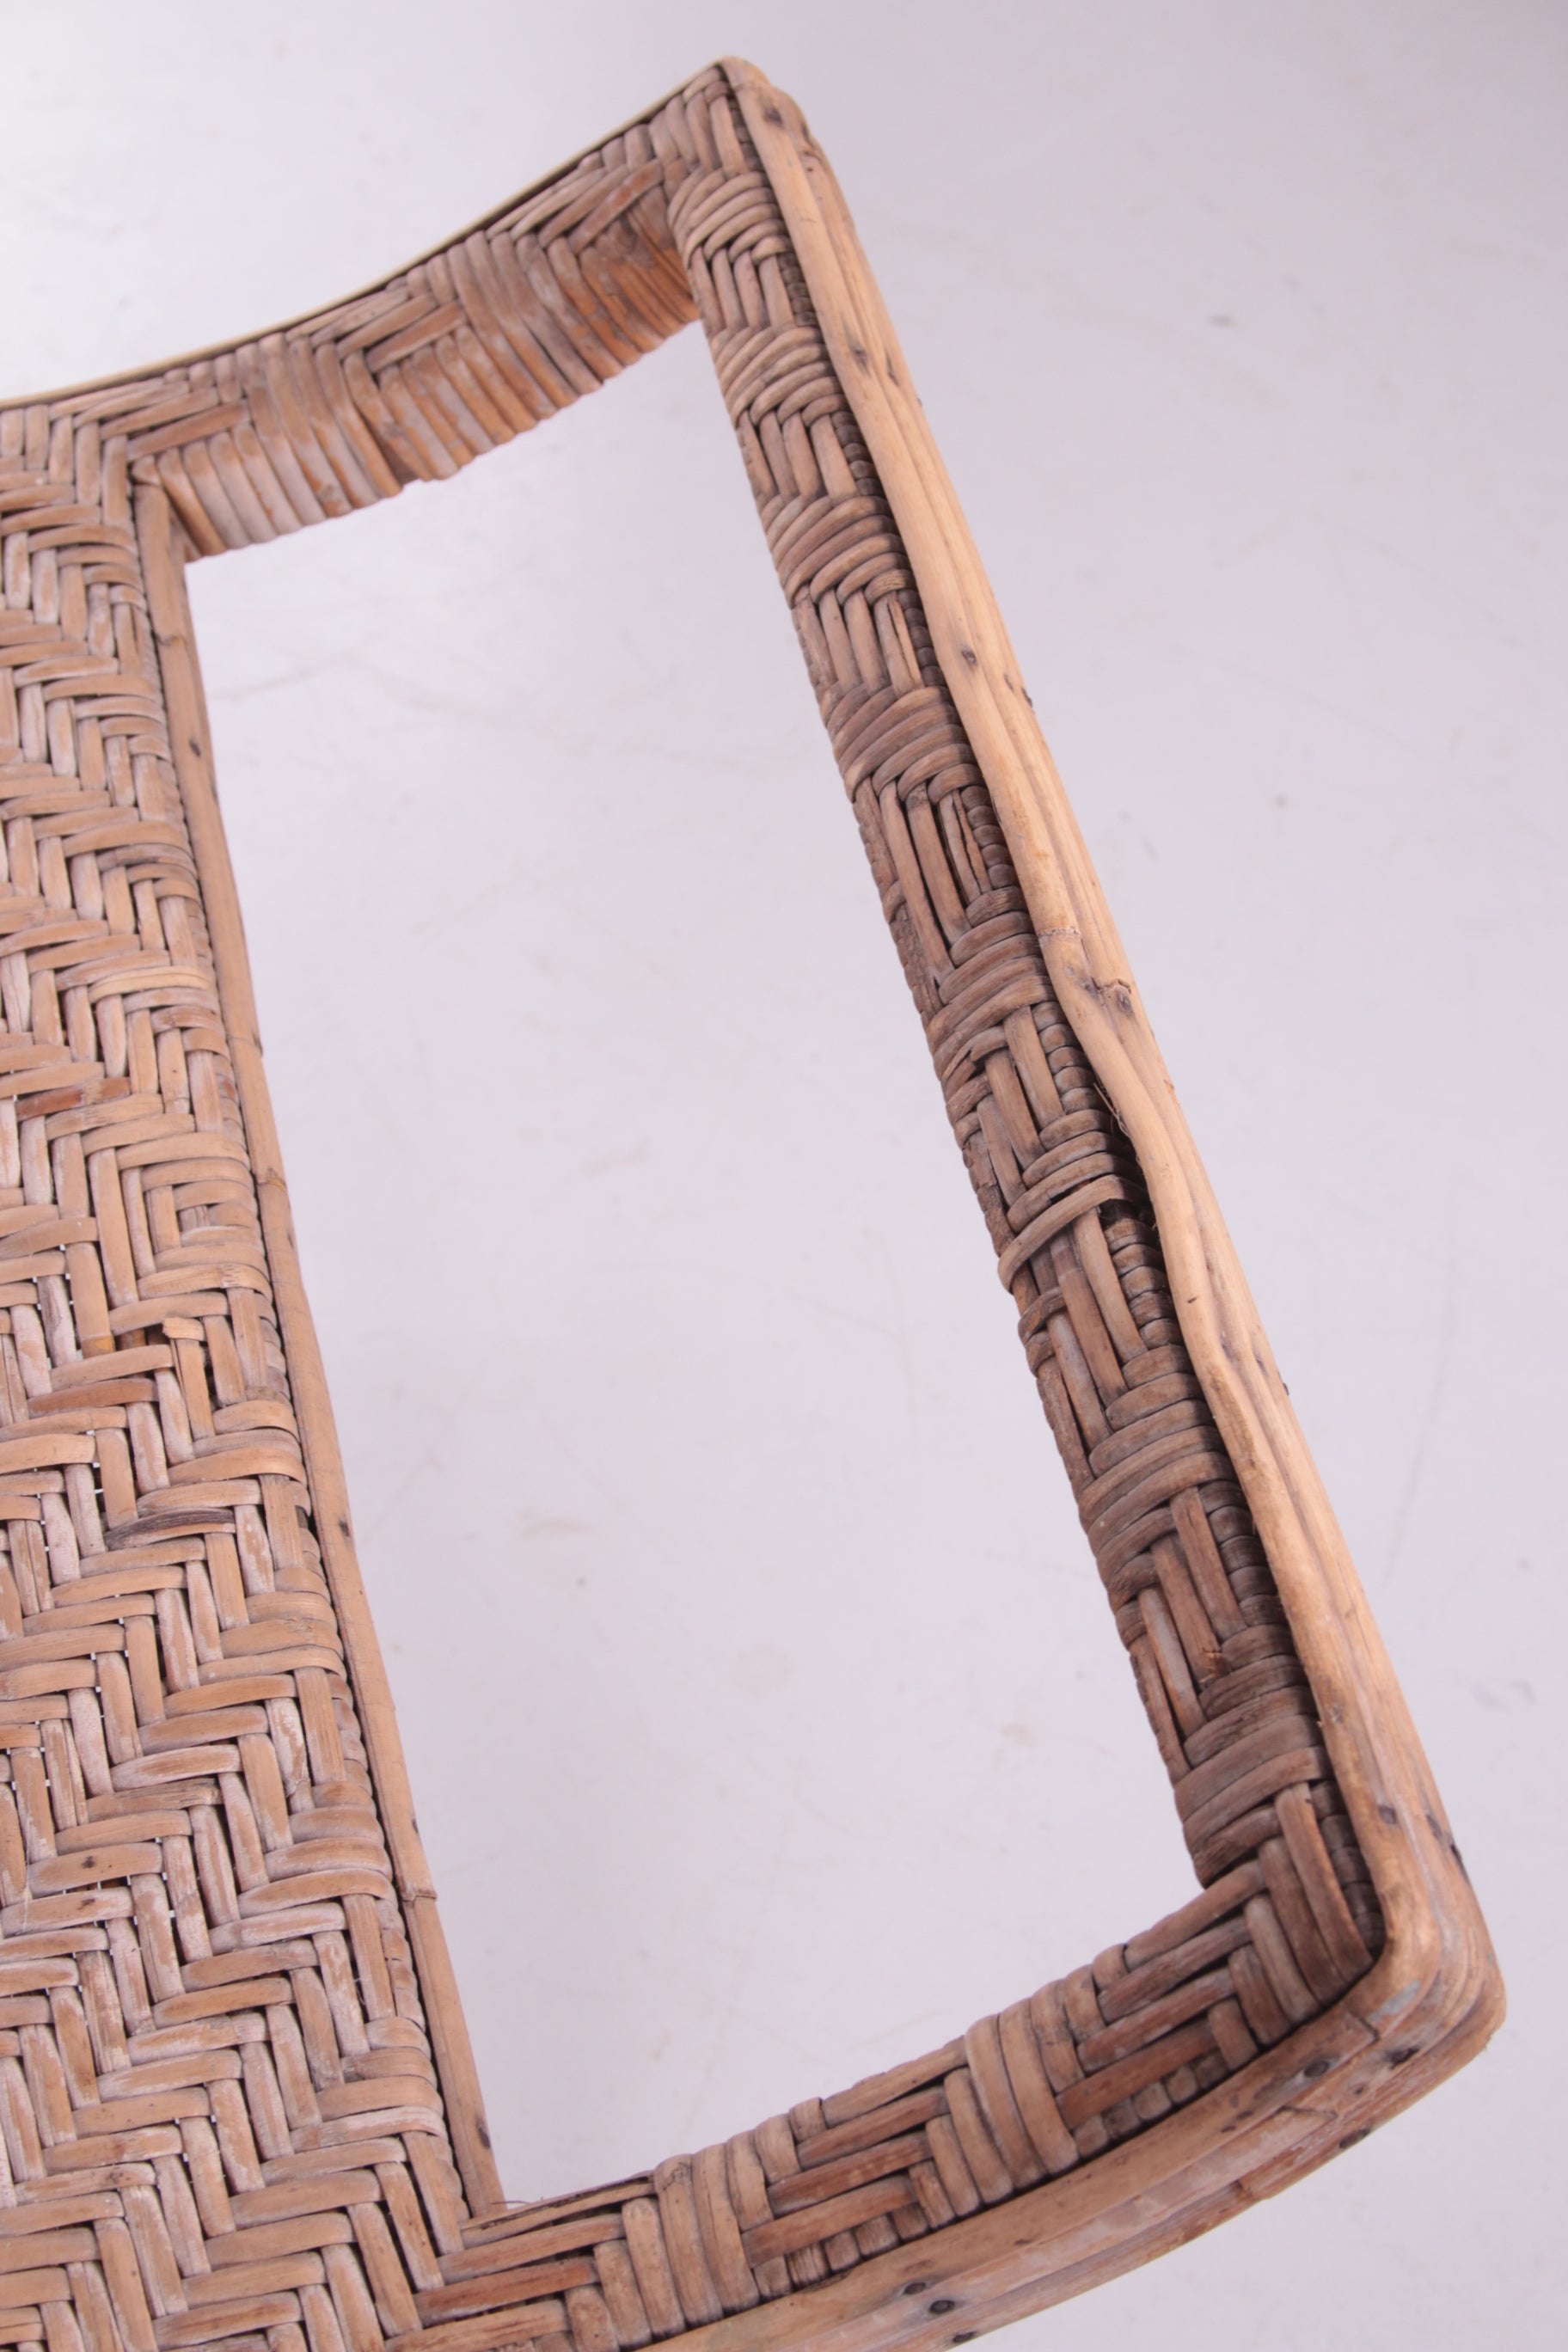 Spaanse bamboe en rieten opklapbare loungestoel uit de jaren 60 detail voetsteun